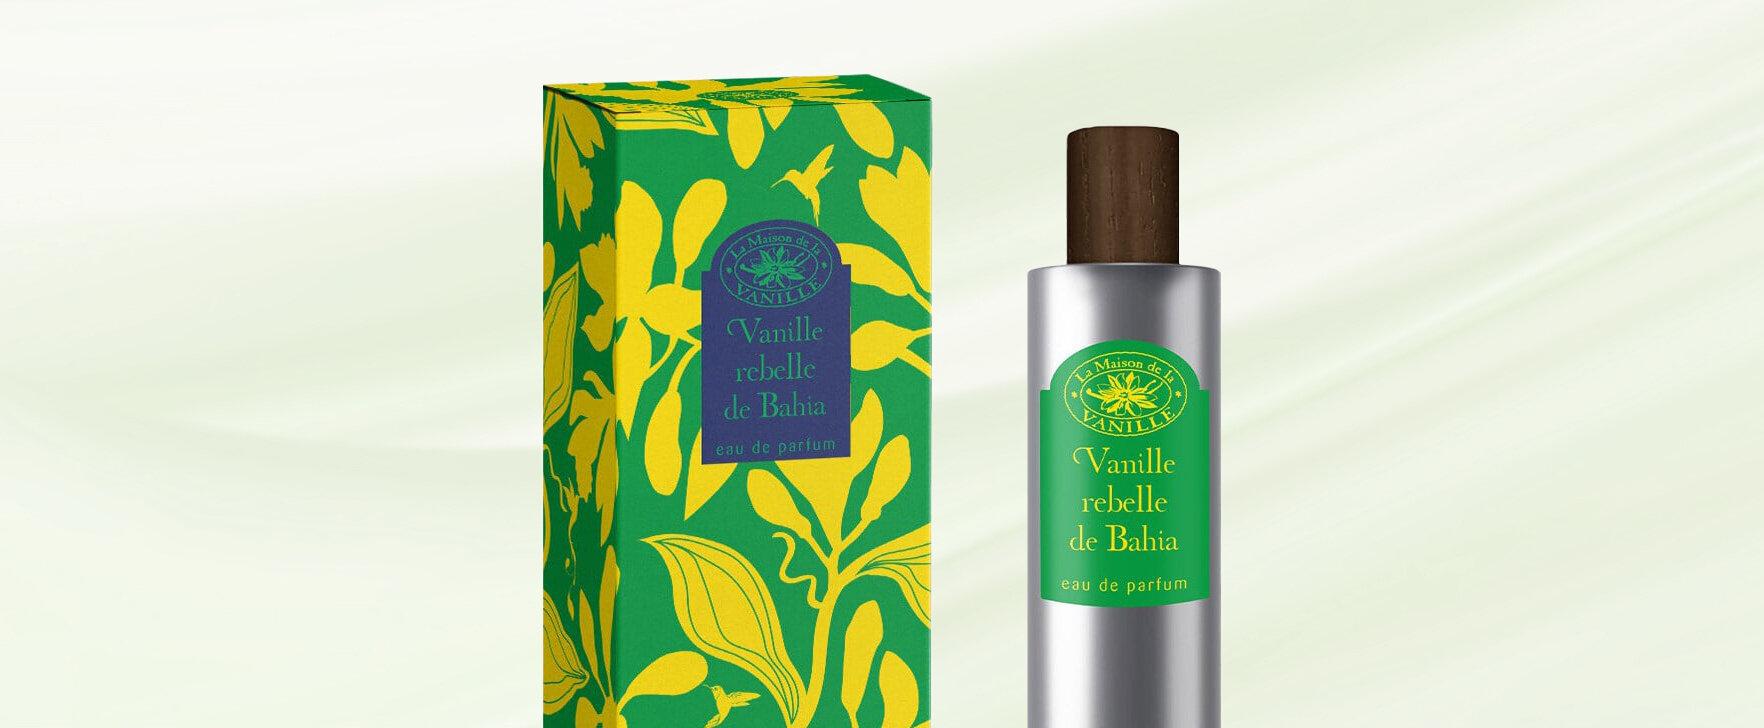 The New Eau de Parfum "Vanille Rebelle de Bahia" by la Maison de la Vanille: An Ode to Freedom